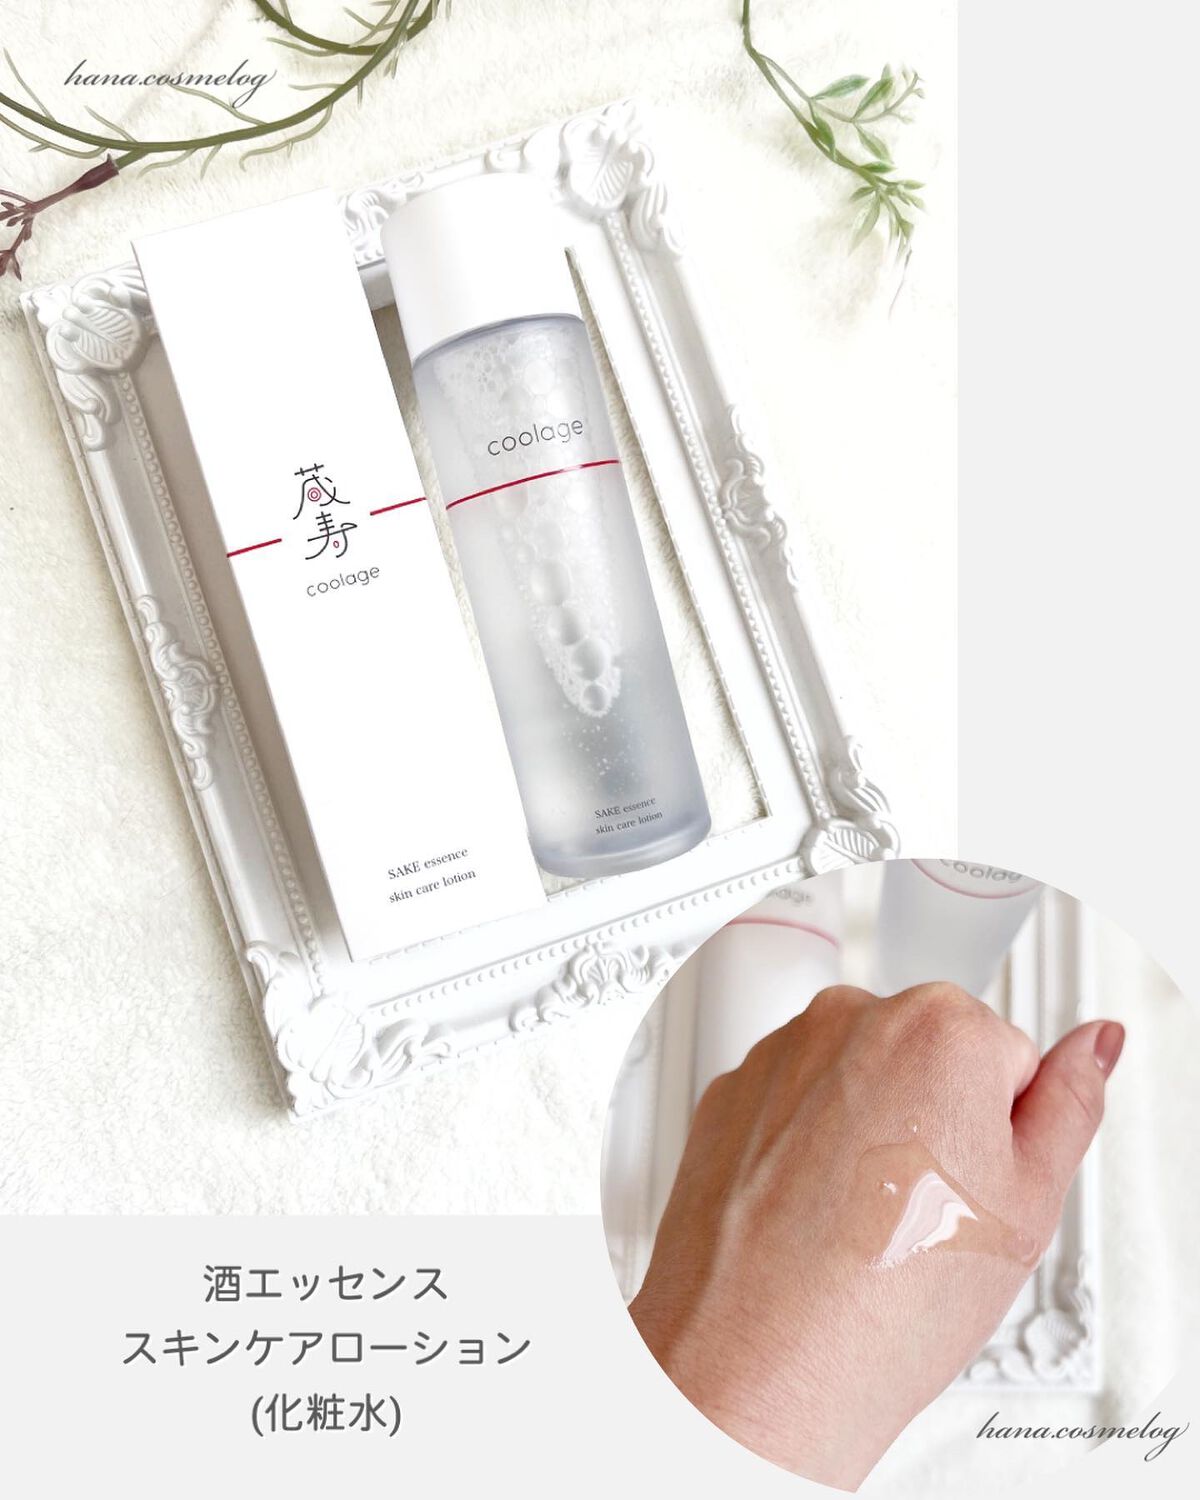 出群 蔵寿 化粧水 乳液 日本酒 セット 150ml クラージュ coolage 基礎化粧品